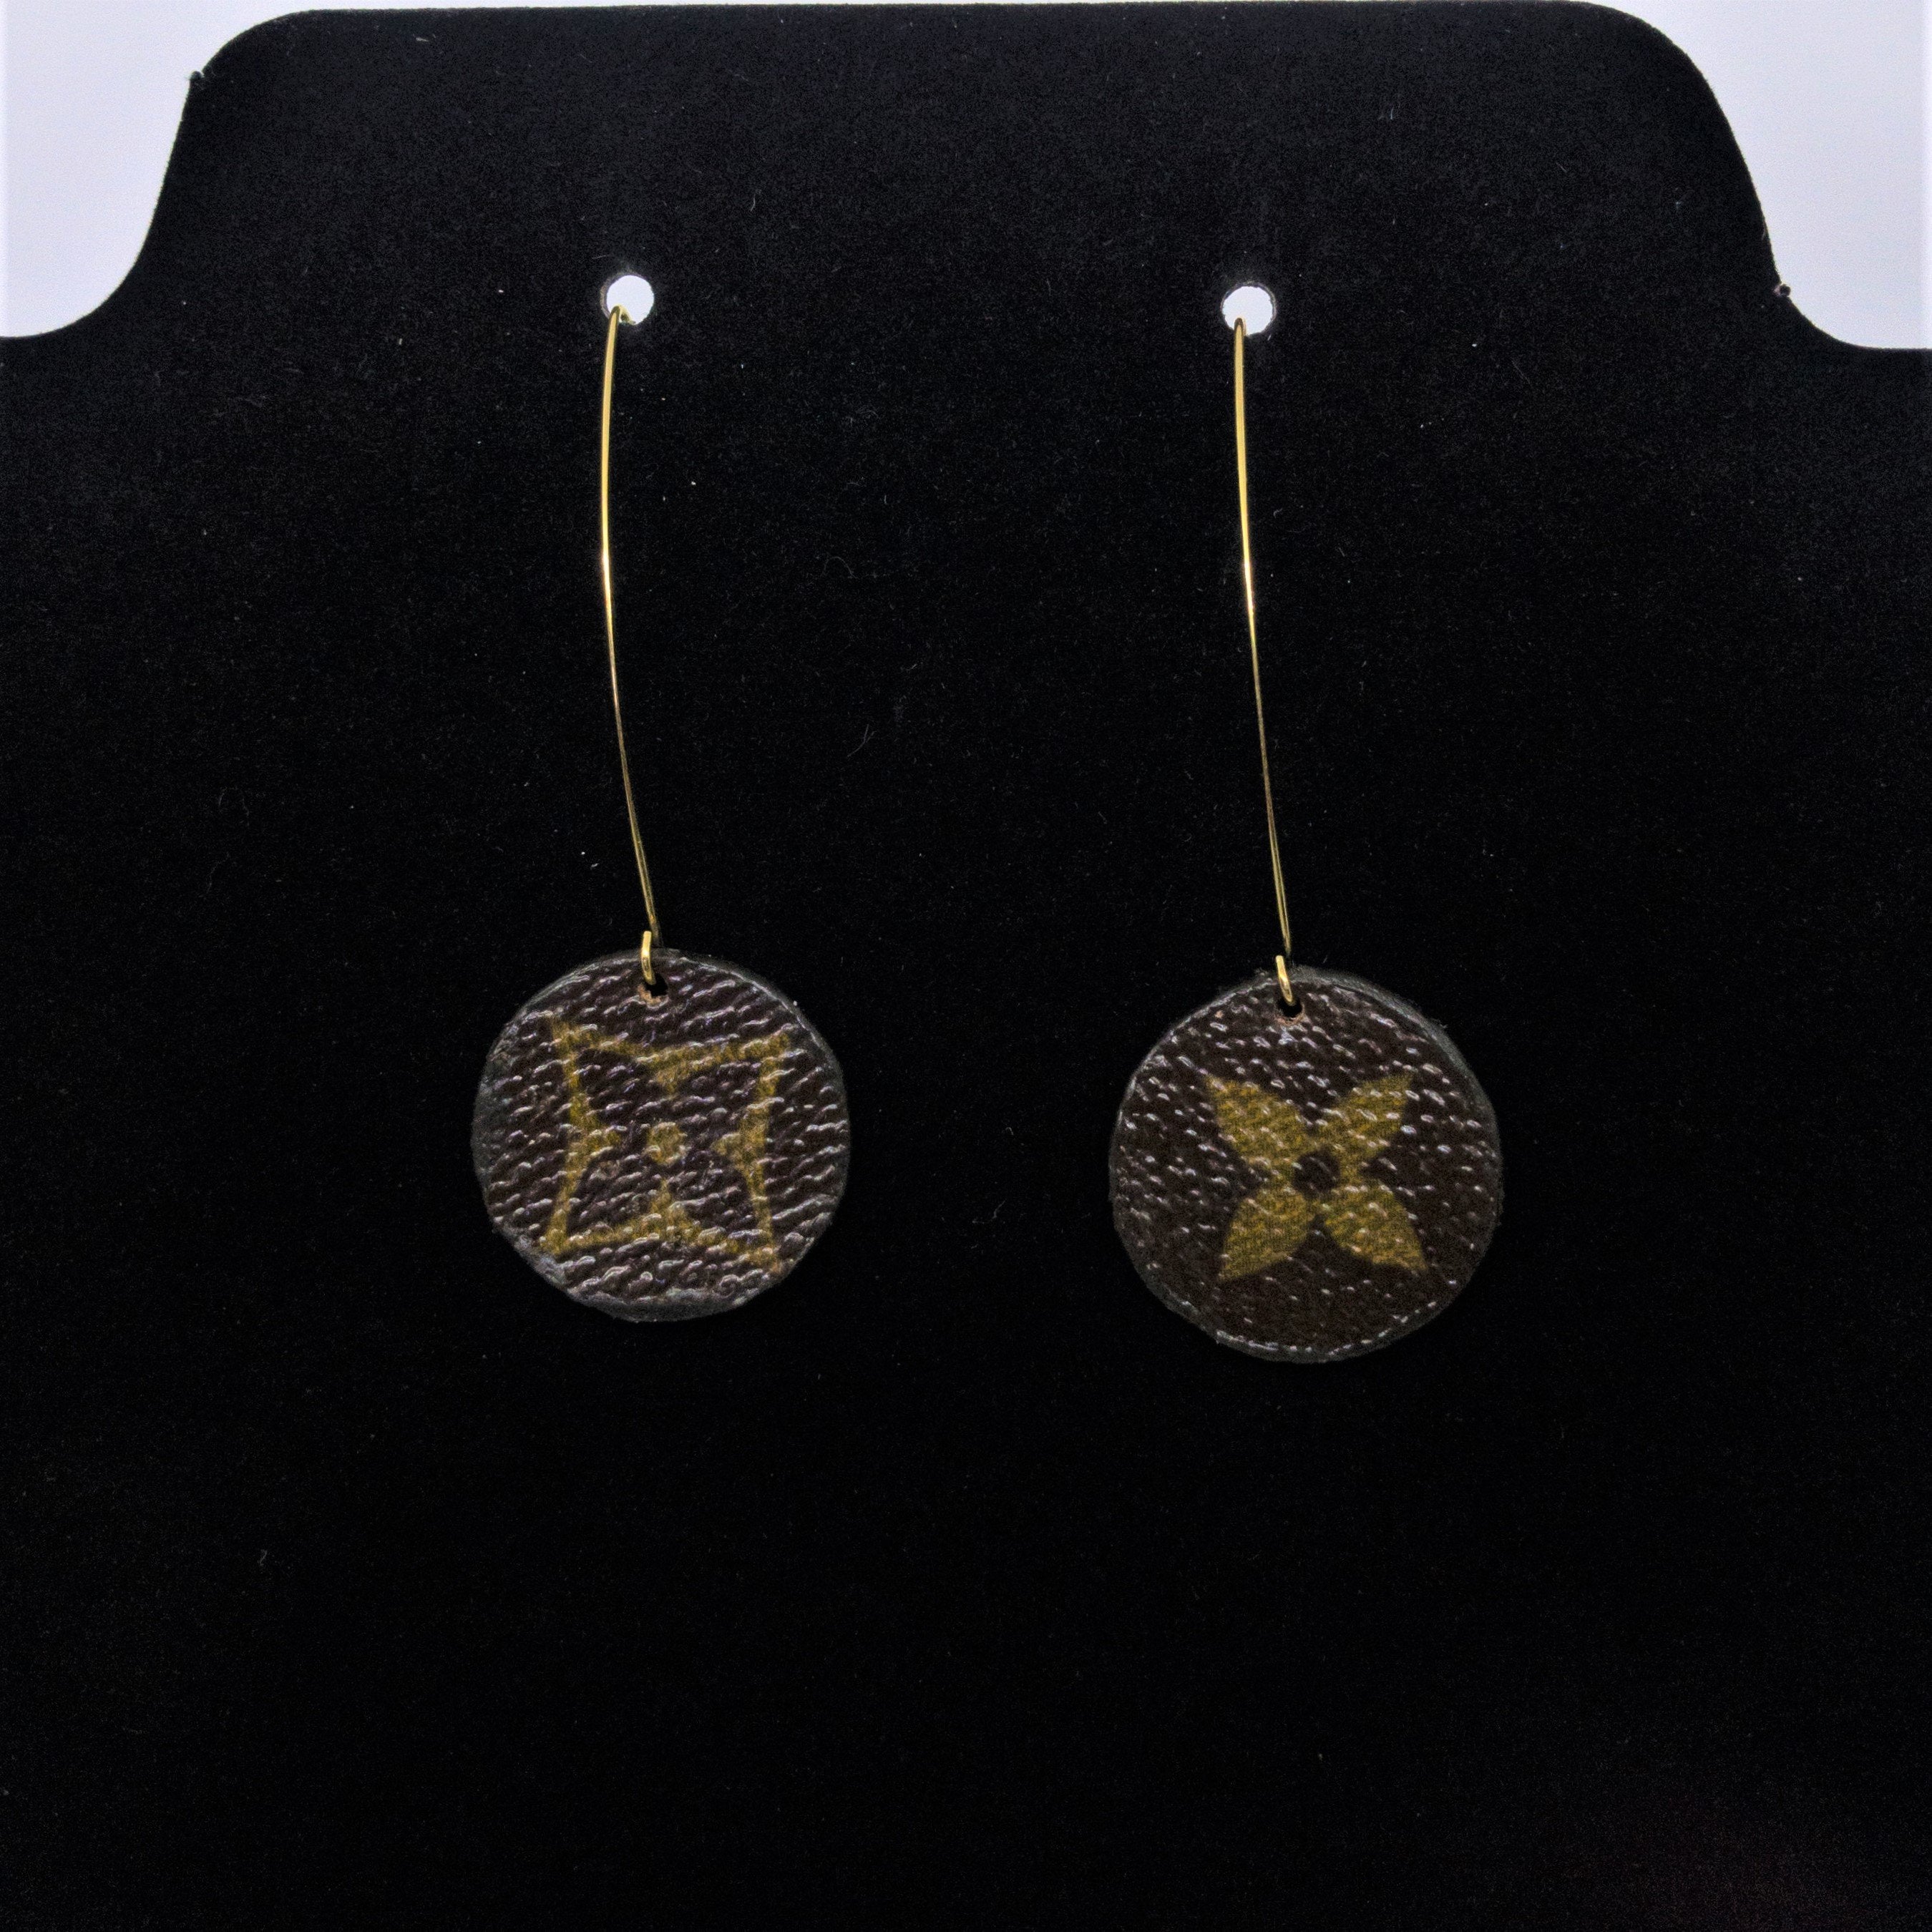 Handmade repurposed Louis Vuitton earrings